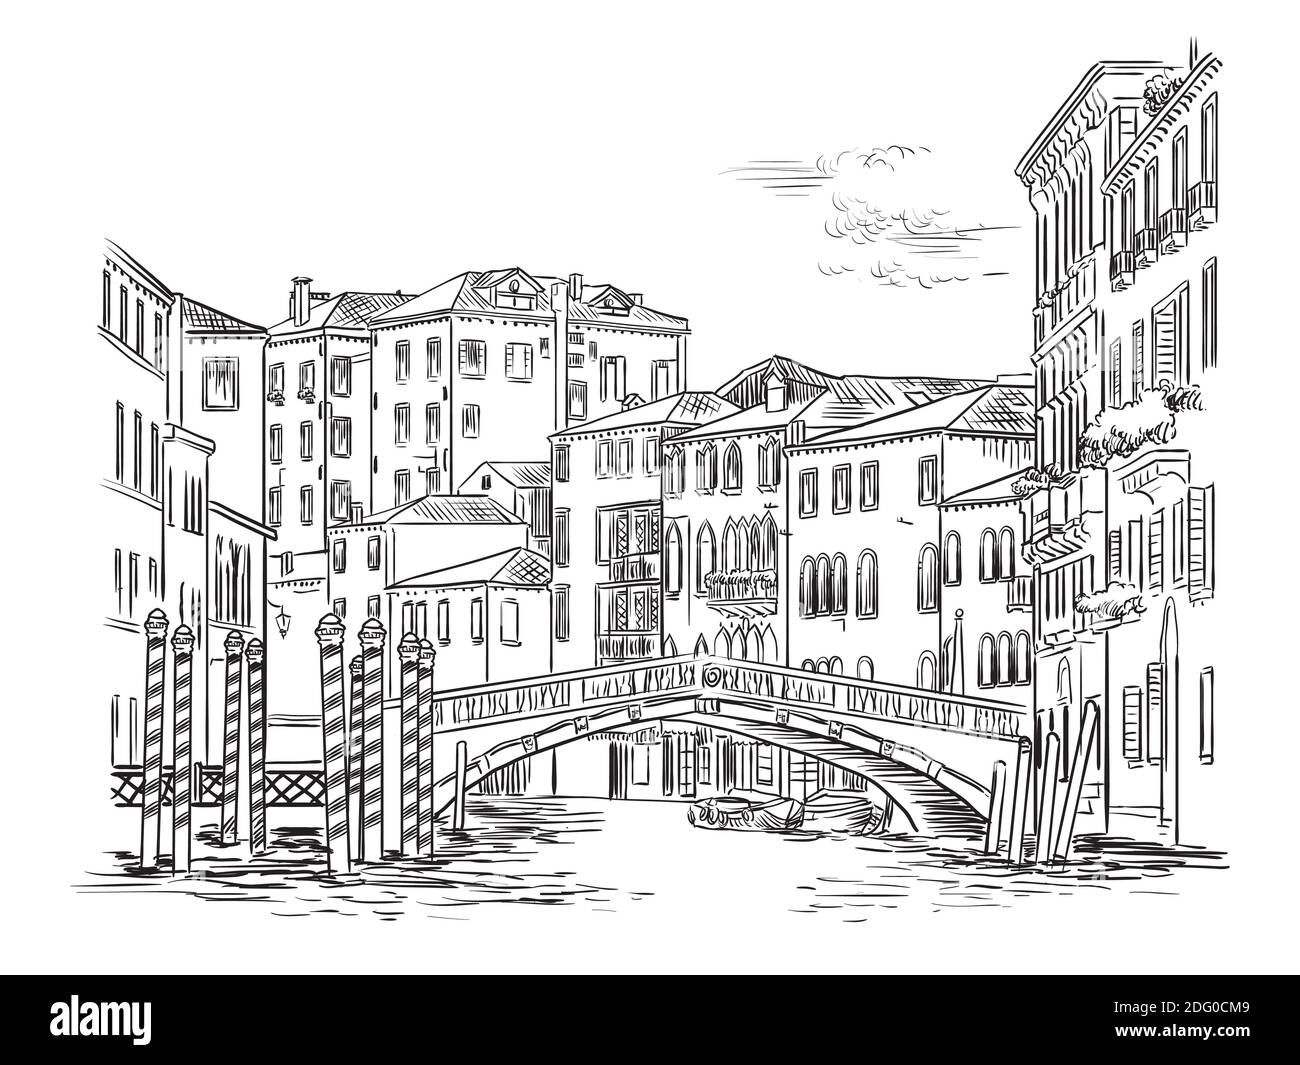 Dibujo vectorial de la mano ilustración del puente sobre el canal en Venecia. Paisaje urbano de Venecia dibujo a mano en color negro aislado sobre fondo blanco. Viajes Ilustración del Vector